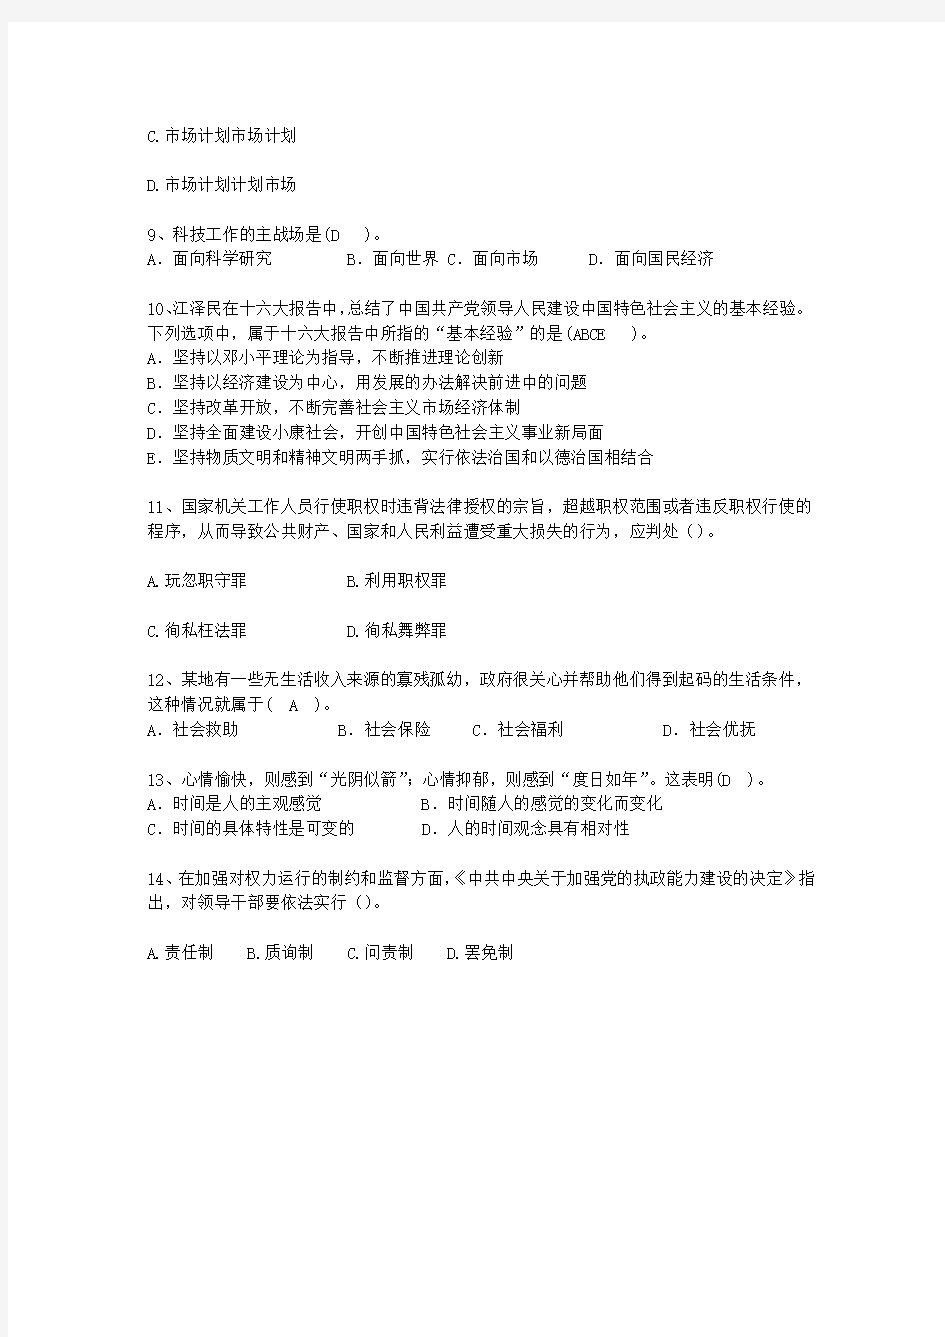 2015江苏省最新公开选拔镇副科级领导干部理论考试试题及答案